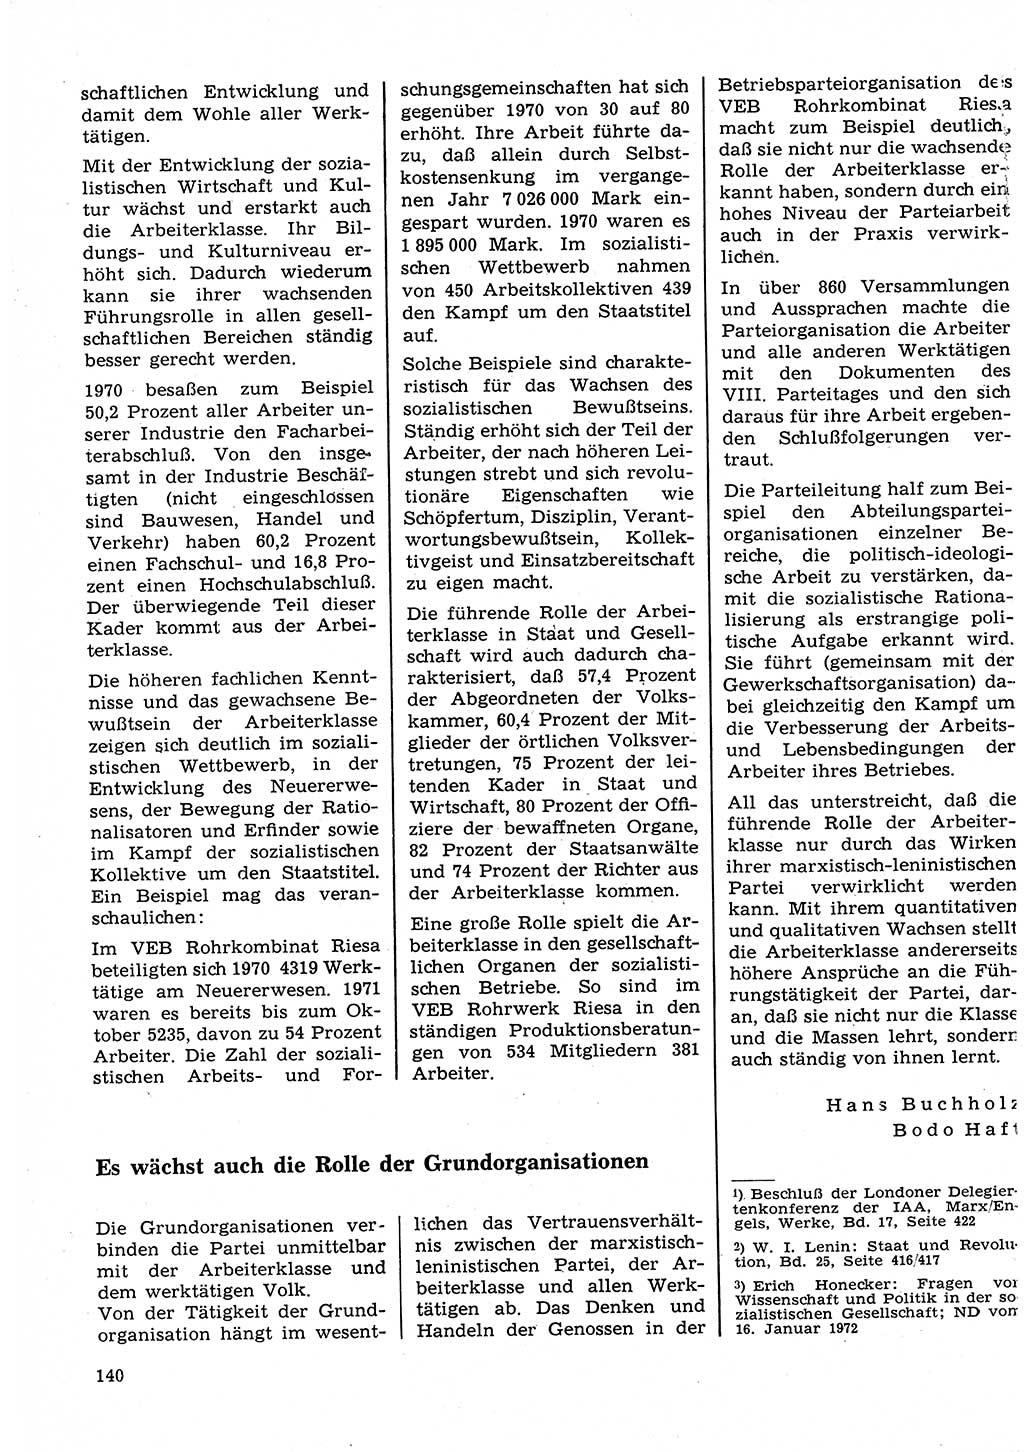 Neuer Weg (NW), Organ des Zentralkomitees (ZK) der SED (Sozialistische Einheitspartei Deutschlands) für Fragen des Parteilebens, 27. Jahrgang [Deutsche Demokratische Republik (DDR)] 1972, Seite 140 (NW ZK SED DDR 1972, S. 140)